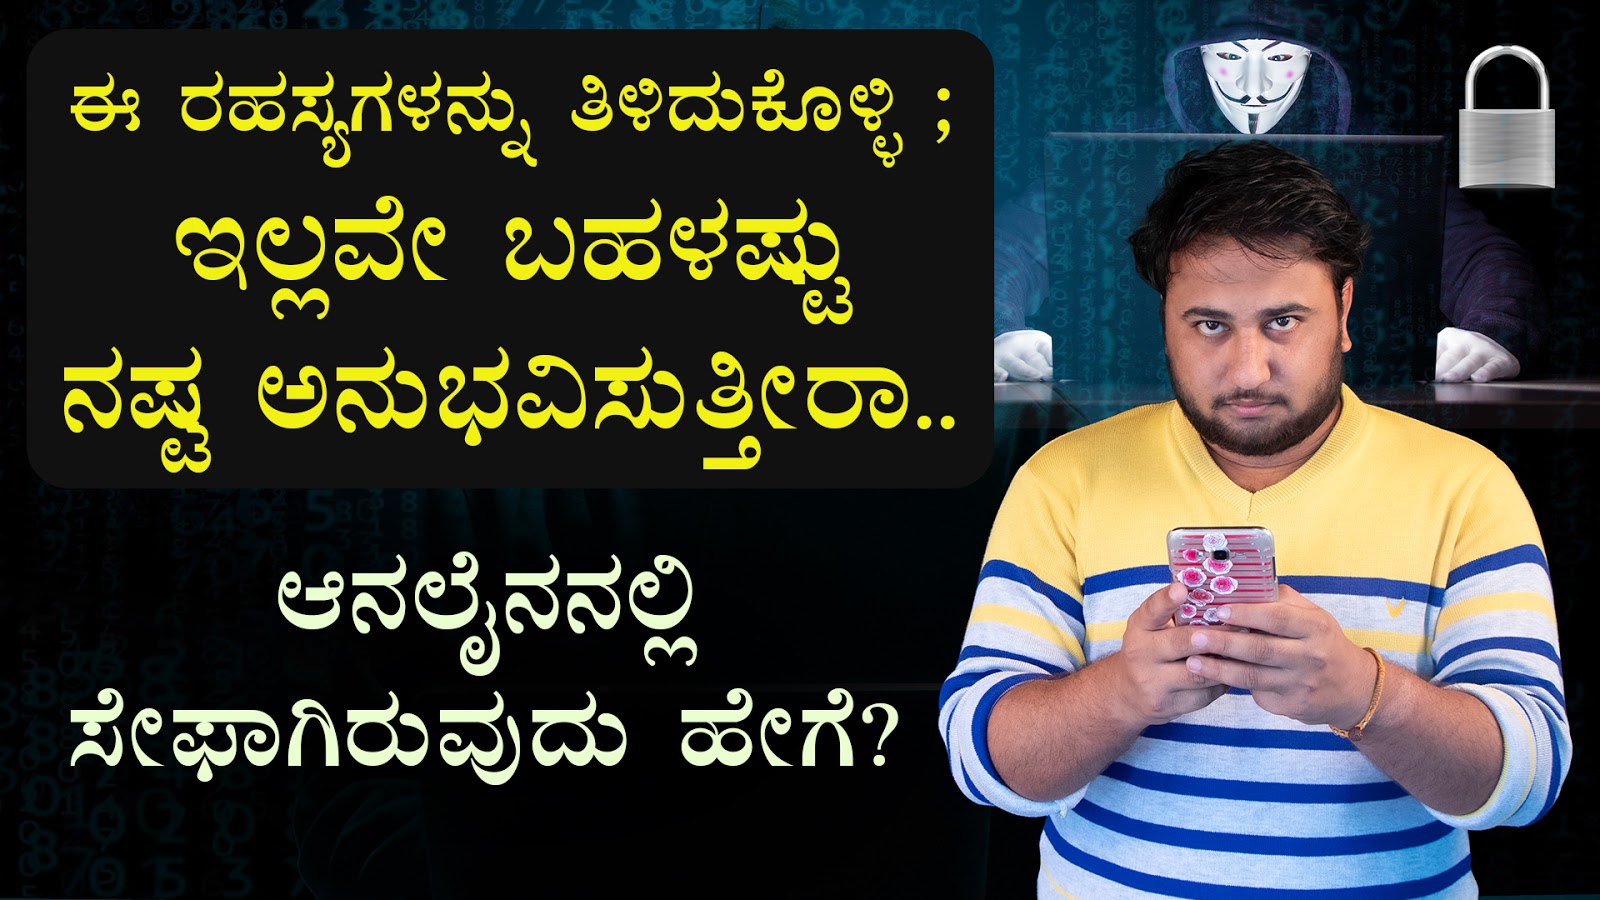 ಆನಲೈನನಲ್ಲಿ ಸೇಫಾಗಿರುವುದು ಹೇಗೆ? How to be Safe in Online? Cyber Security Tips in Kannada